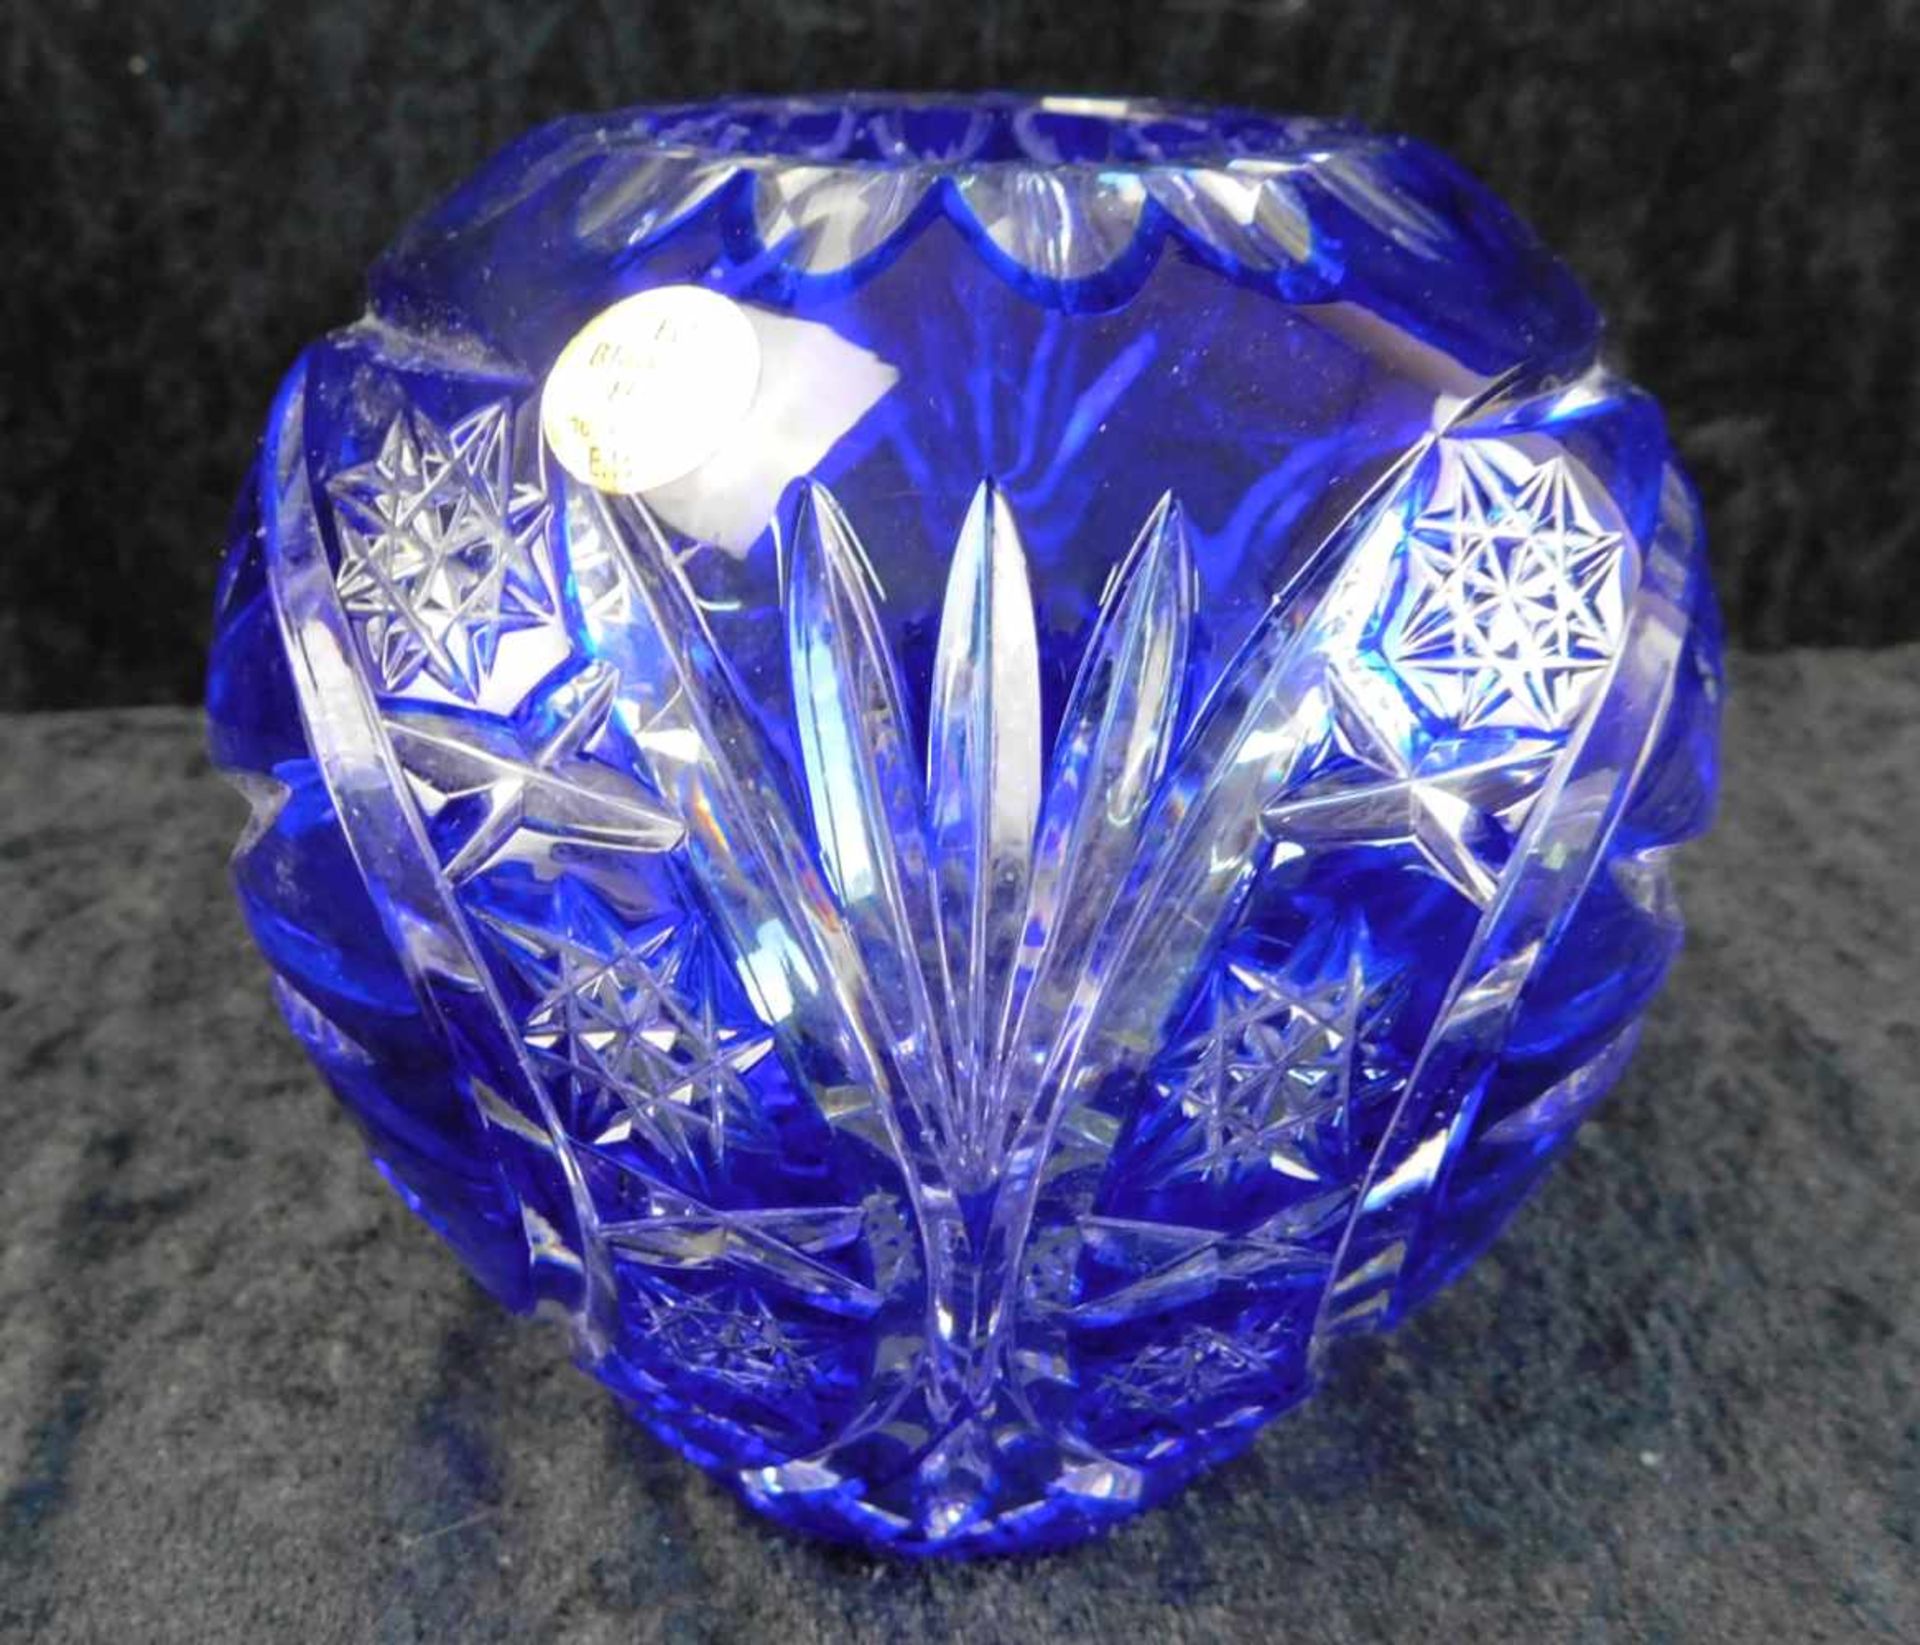 Vase Kugelform, Bleikristall Einschmelzung blau, handgeschliffen, Marke E.W.R., Höhe 13 cm, Mitte - Bild 2 aus 3